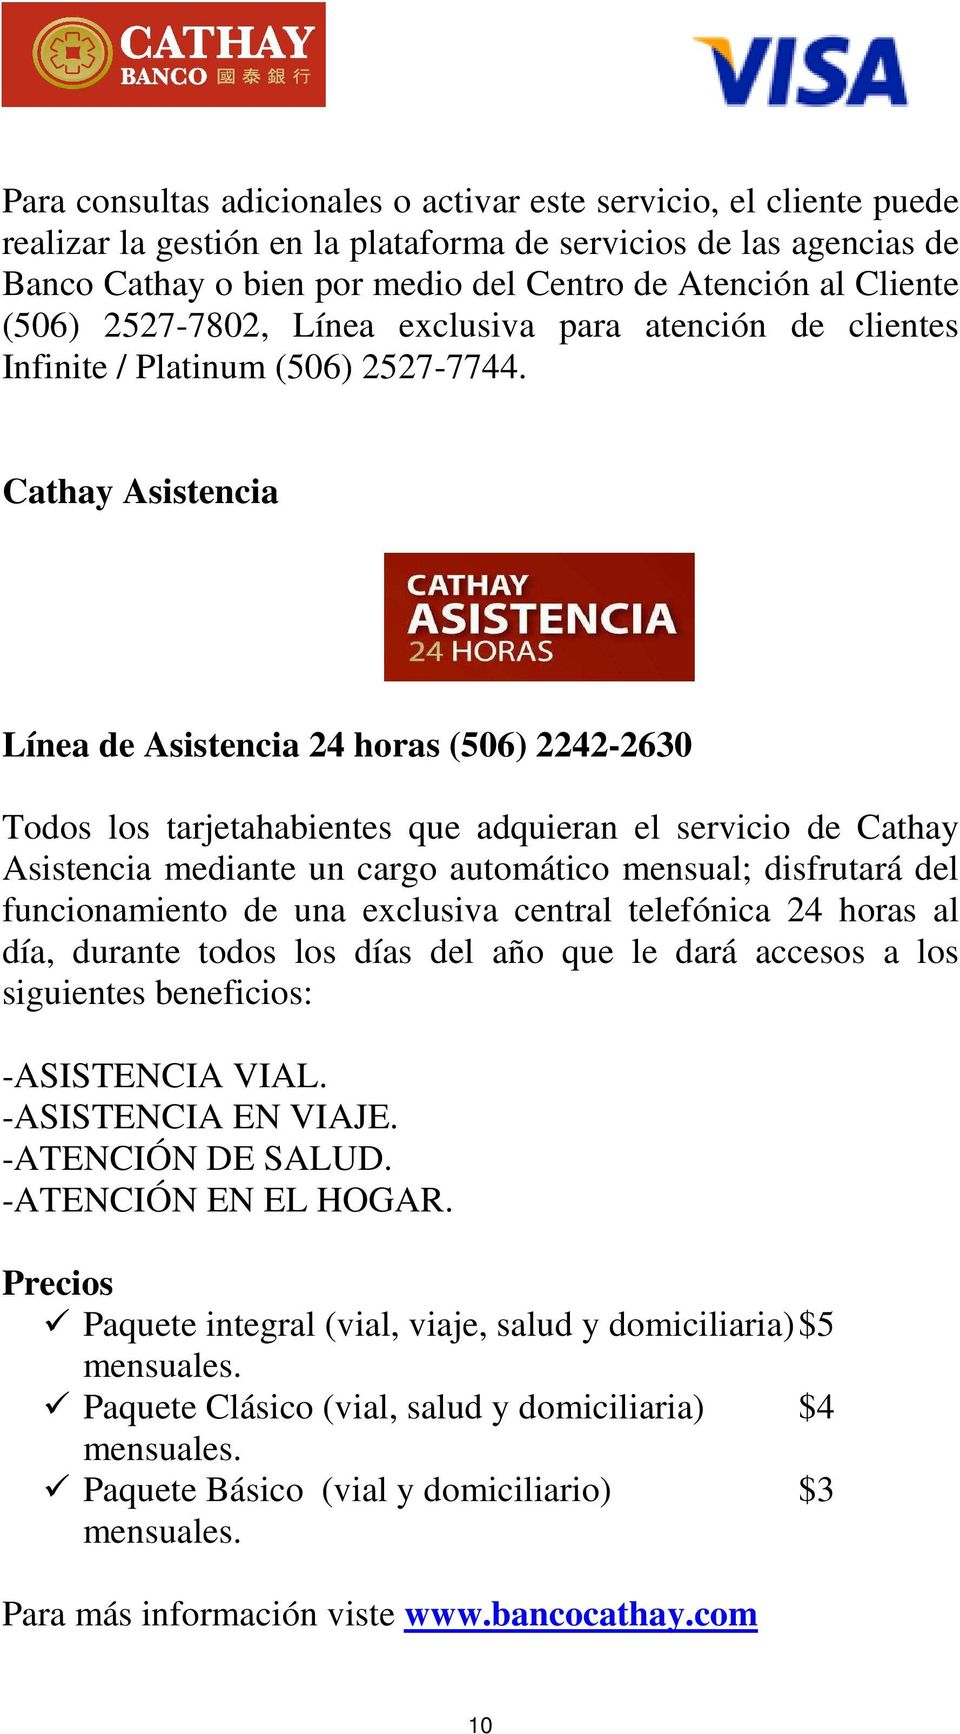 Cathay Asistencia Línea de Asistencia 24 horas (506) 2242-2630 Todos los tarjetahabientes que adquieran el servicio de Cathay Asistencia mediante un cargo automático mensual; disfrutará del